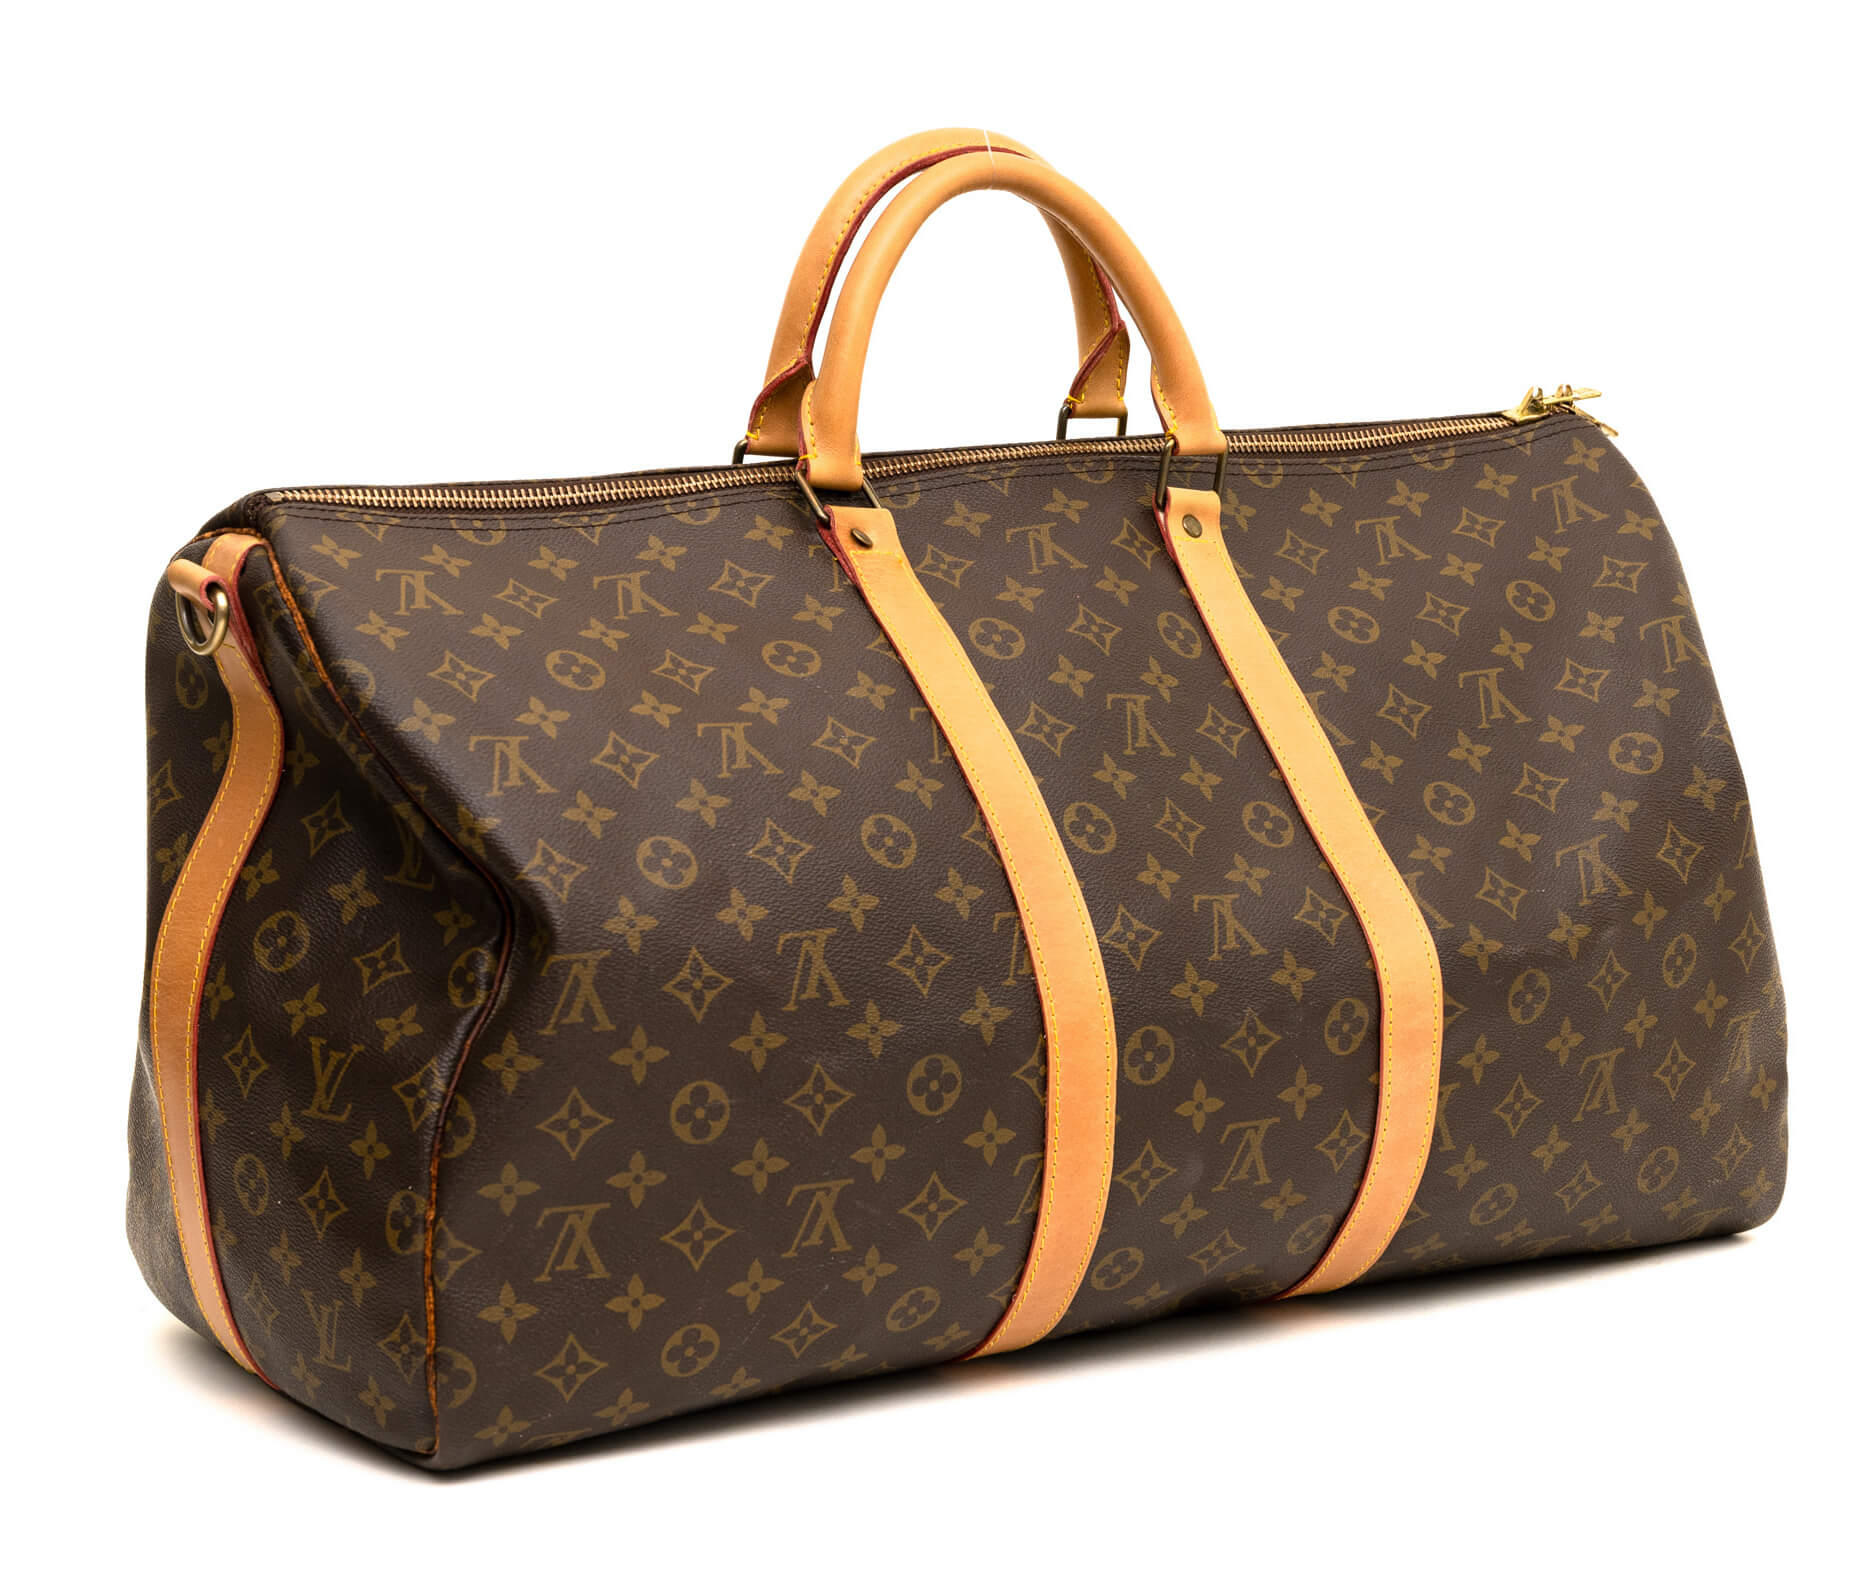 Louis Vuitton Duffle Bag Repair Cost